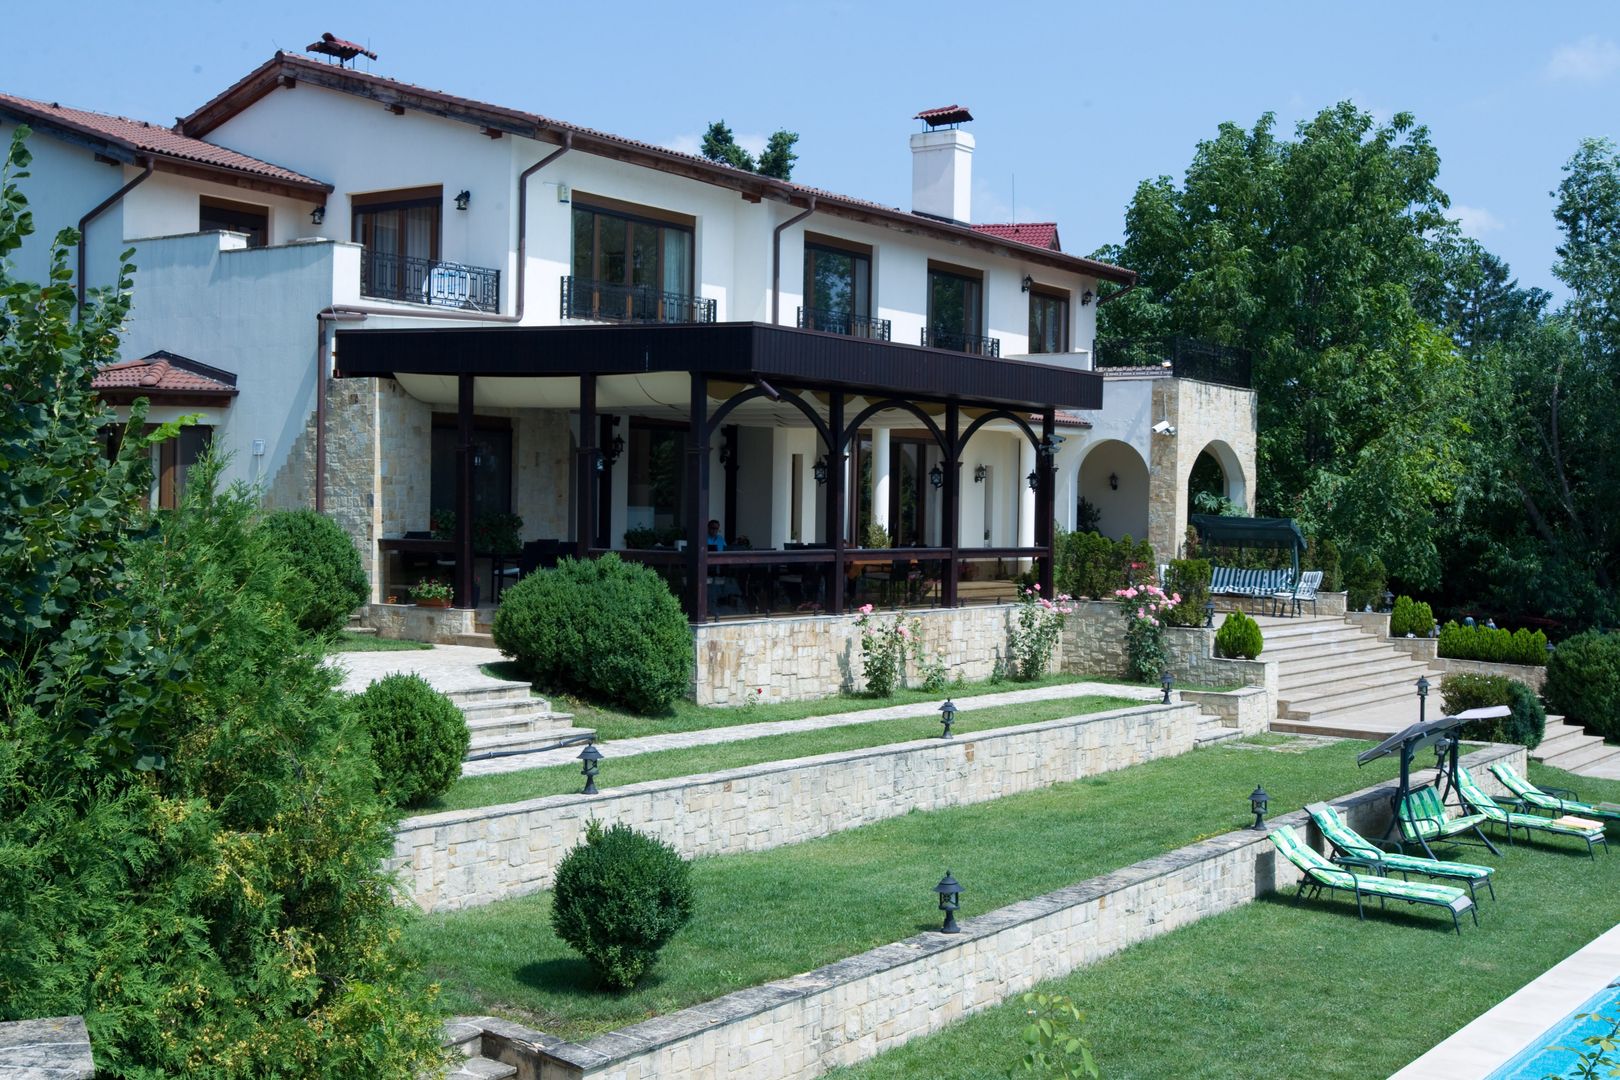 Luxury villa on the shore of Snagov lake - Silistea Snagovului